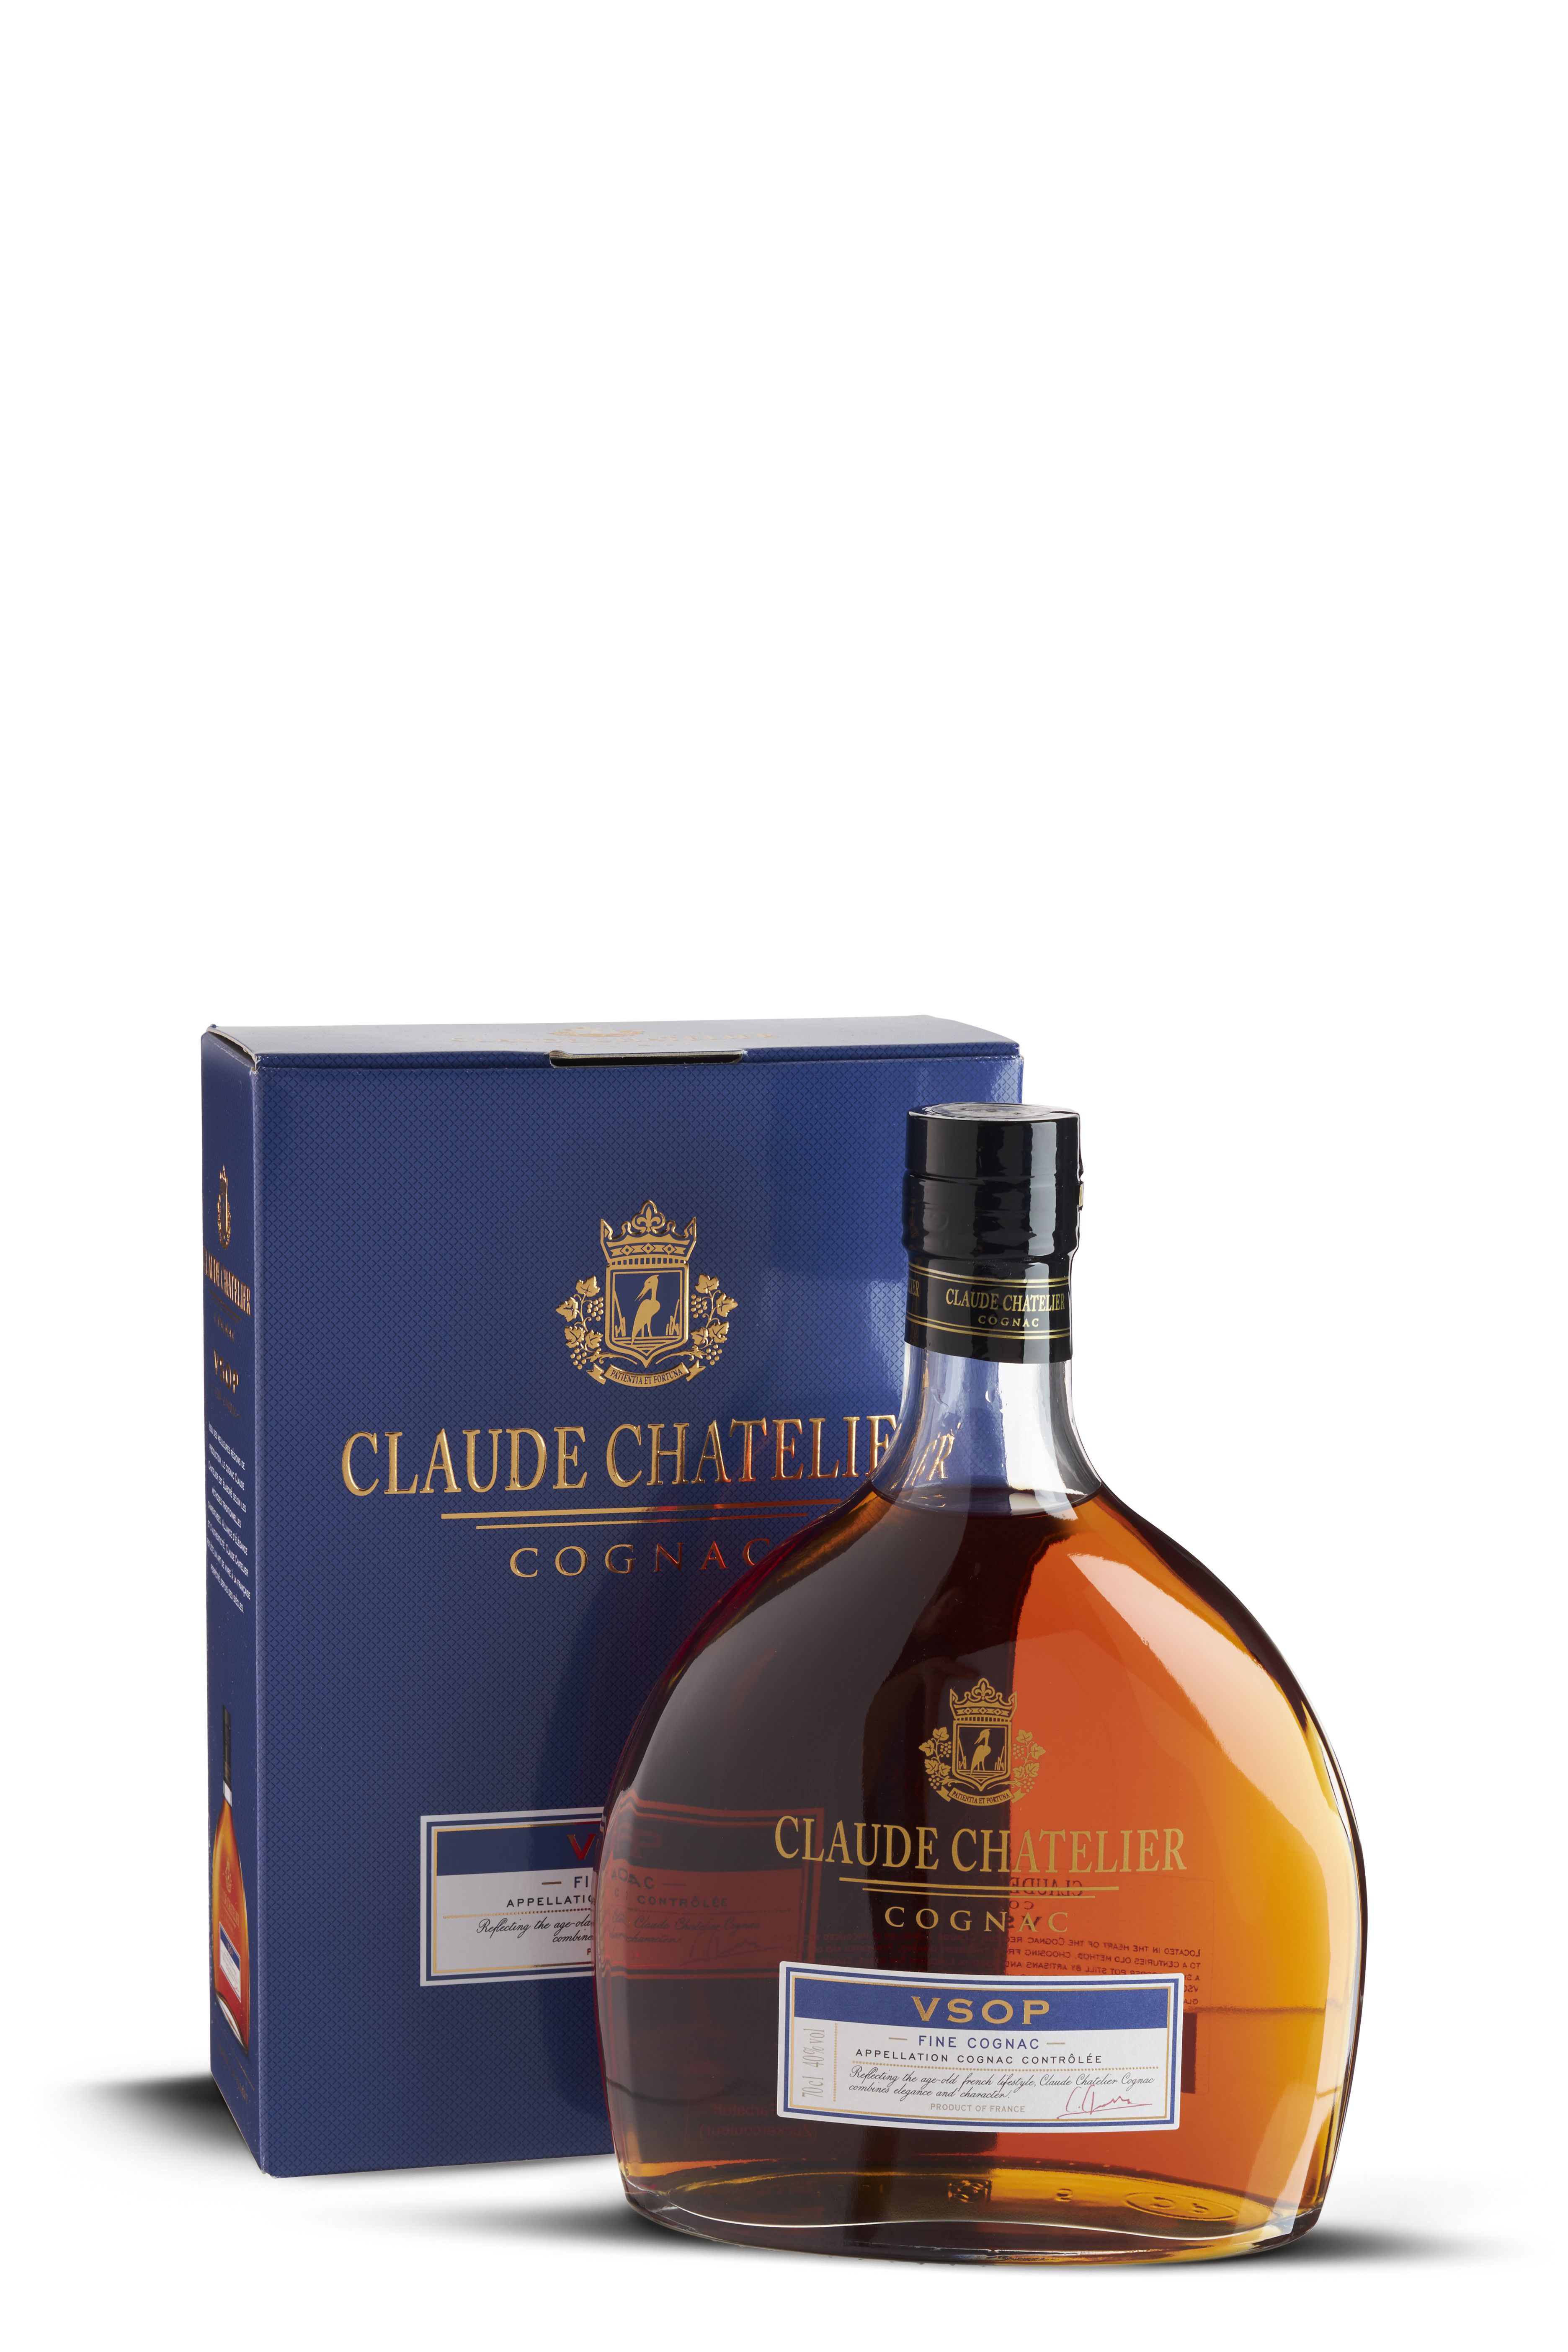 Claude Chatelier Cognac VSOP